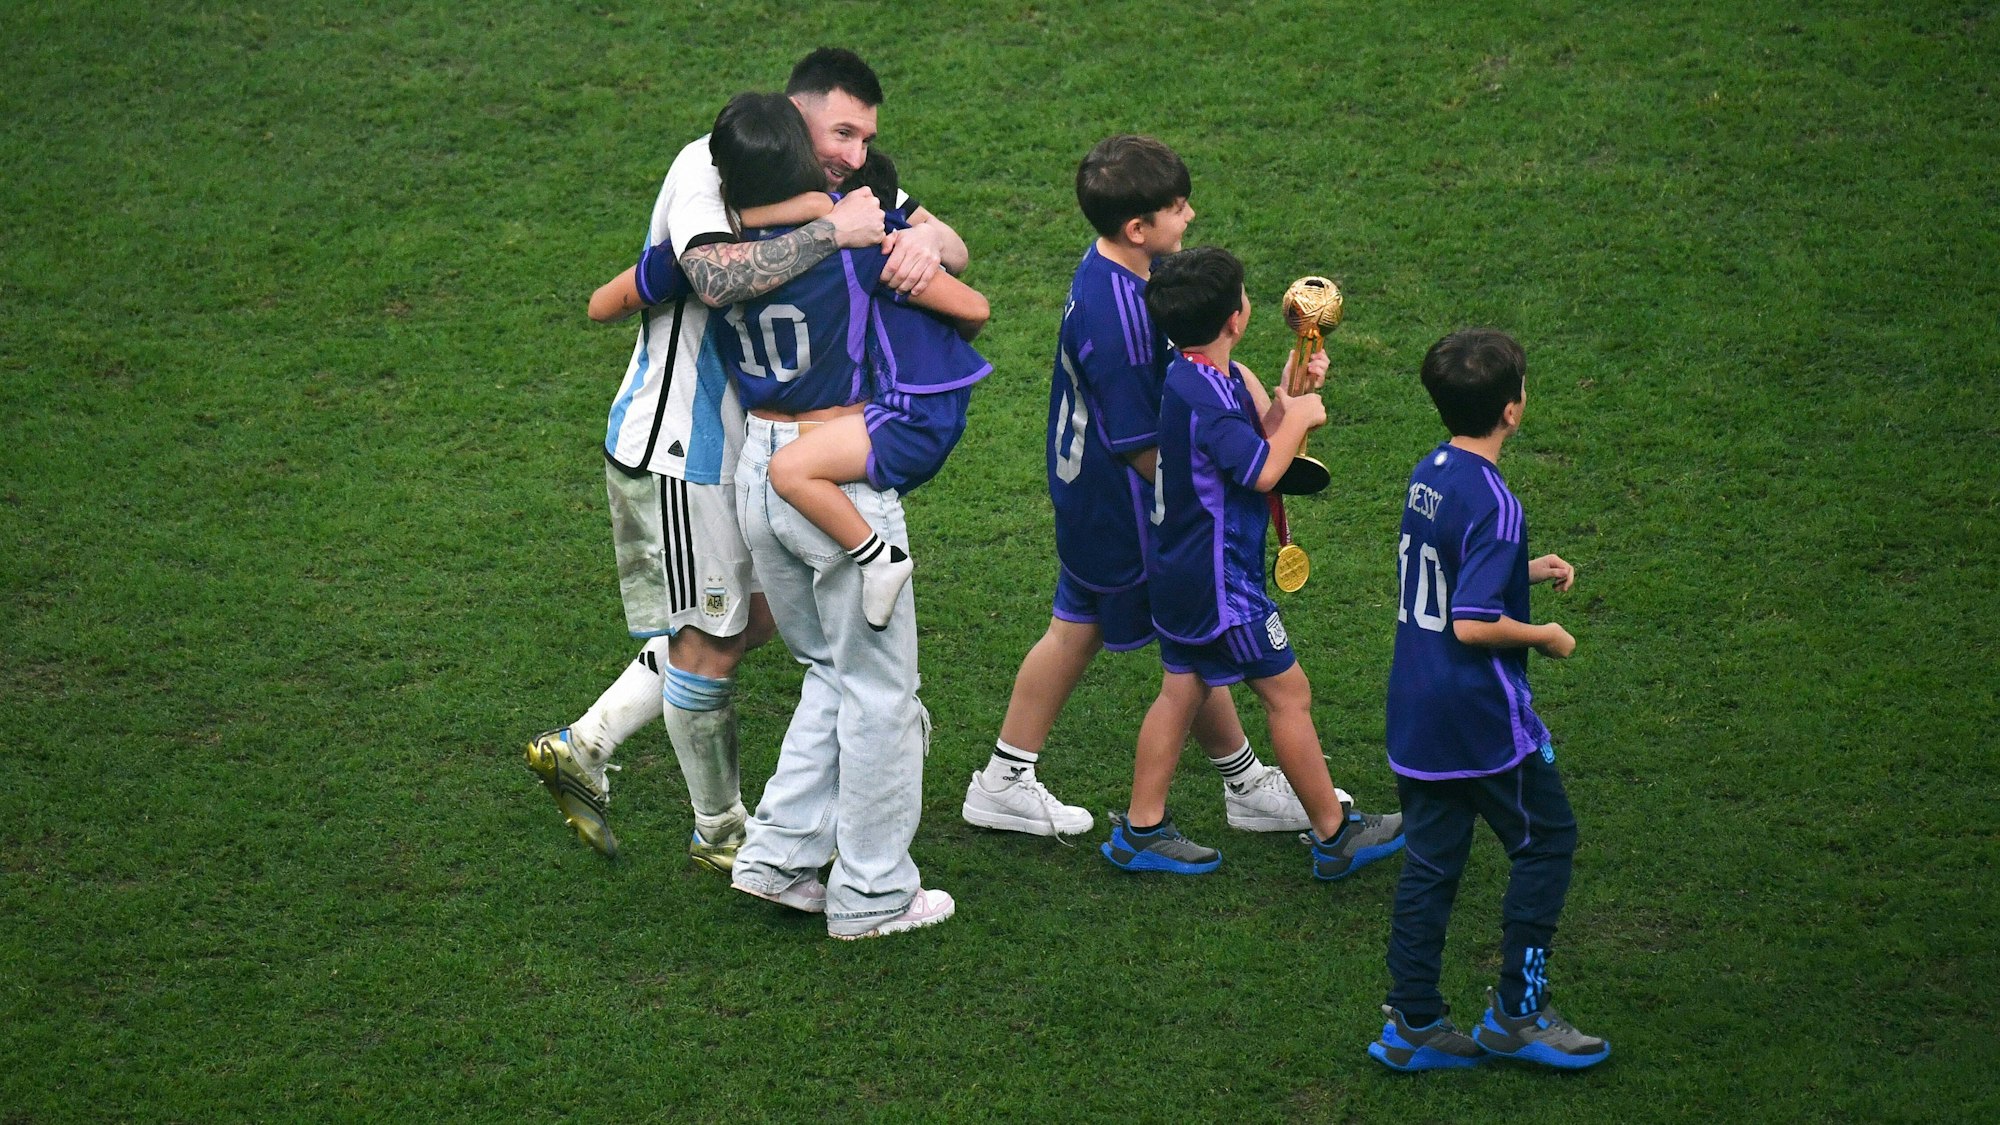 Die Familie von Messi nach WM-Finale auf dem Rasen.